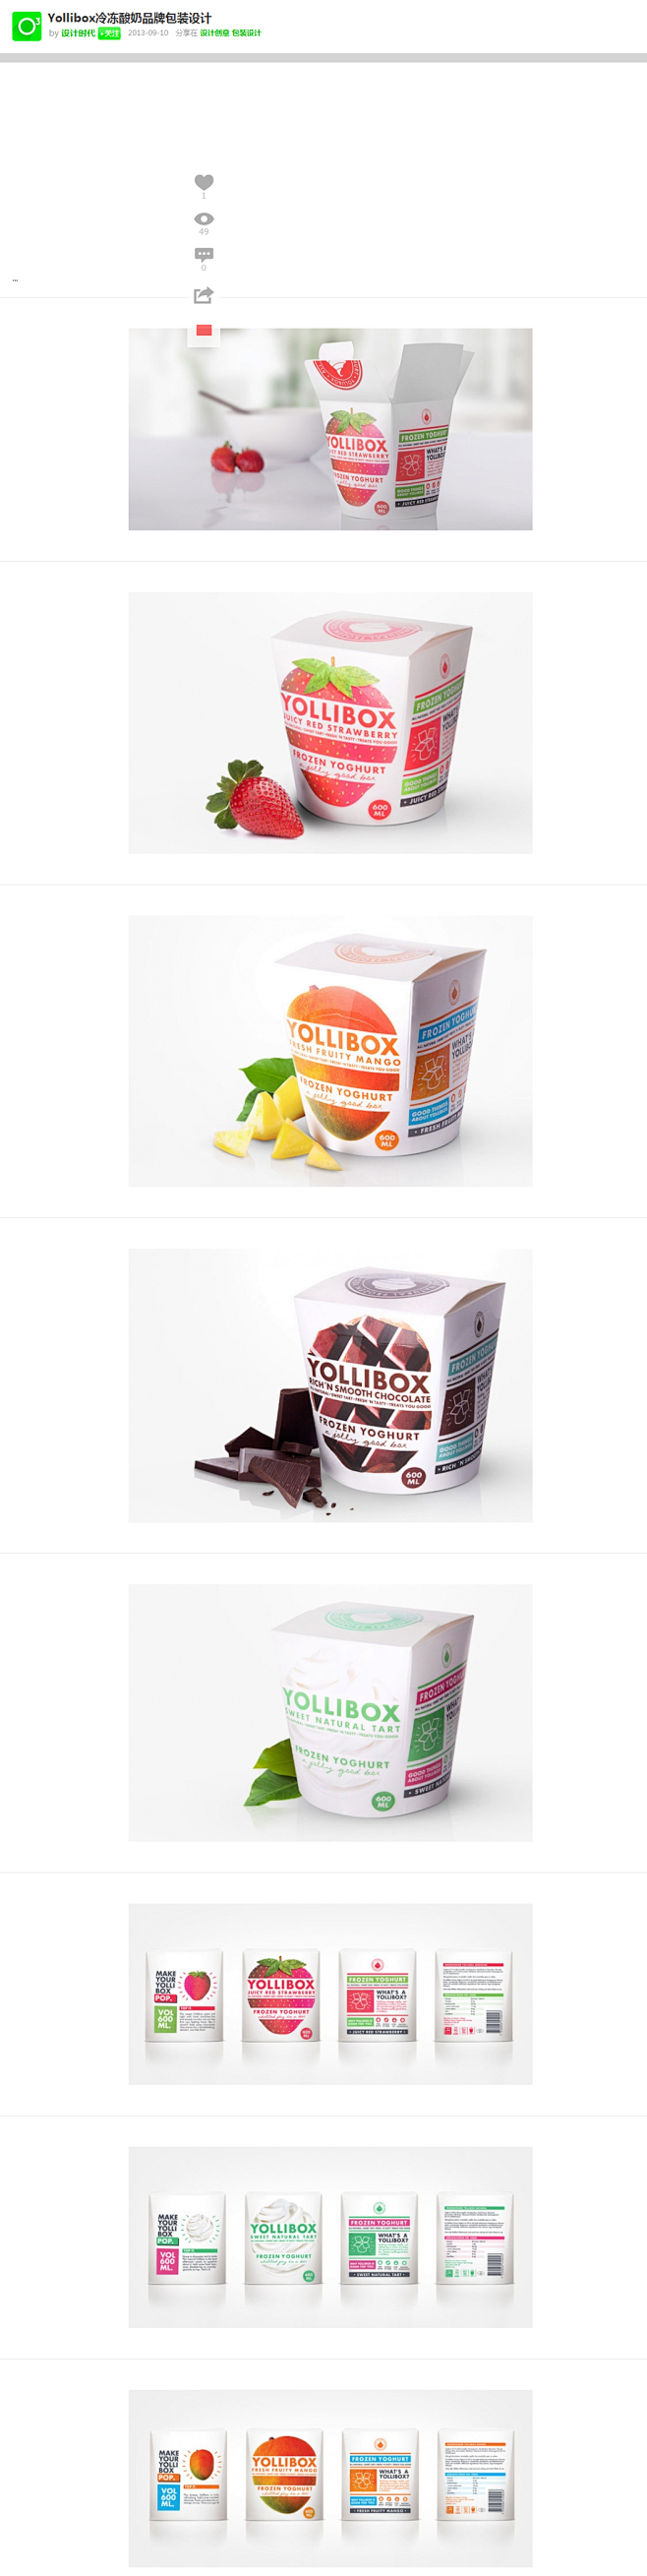 Yollibox冷冻酸奶品牌包装设计 设...